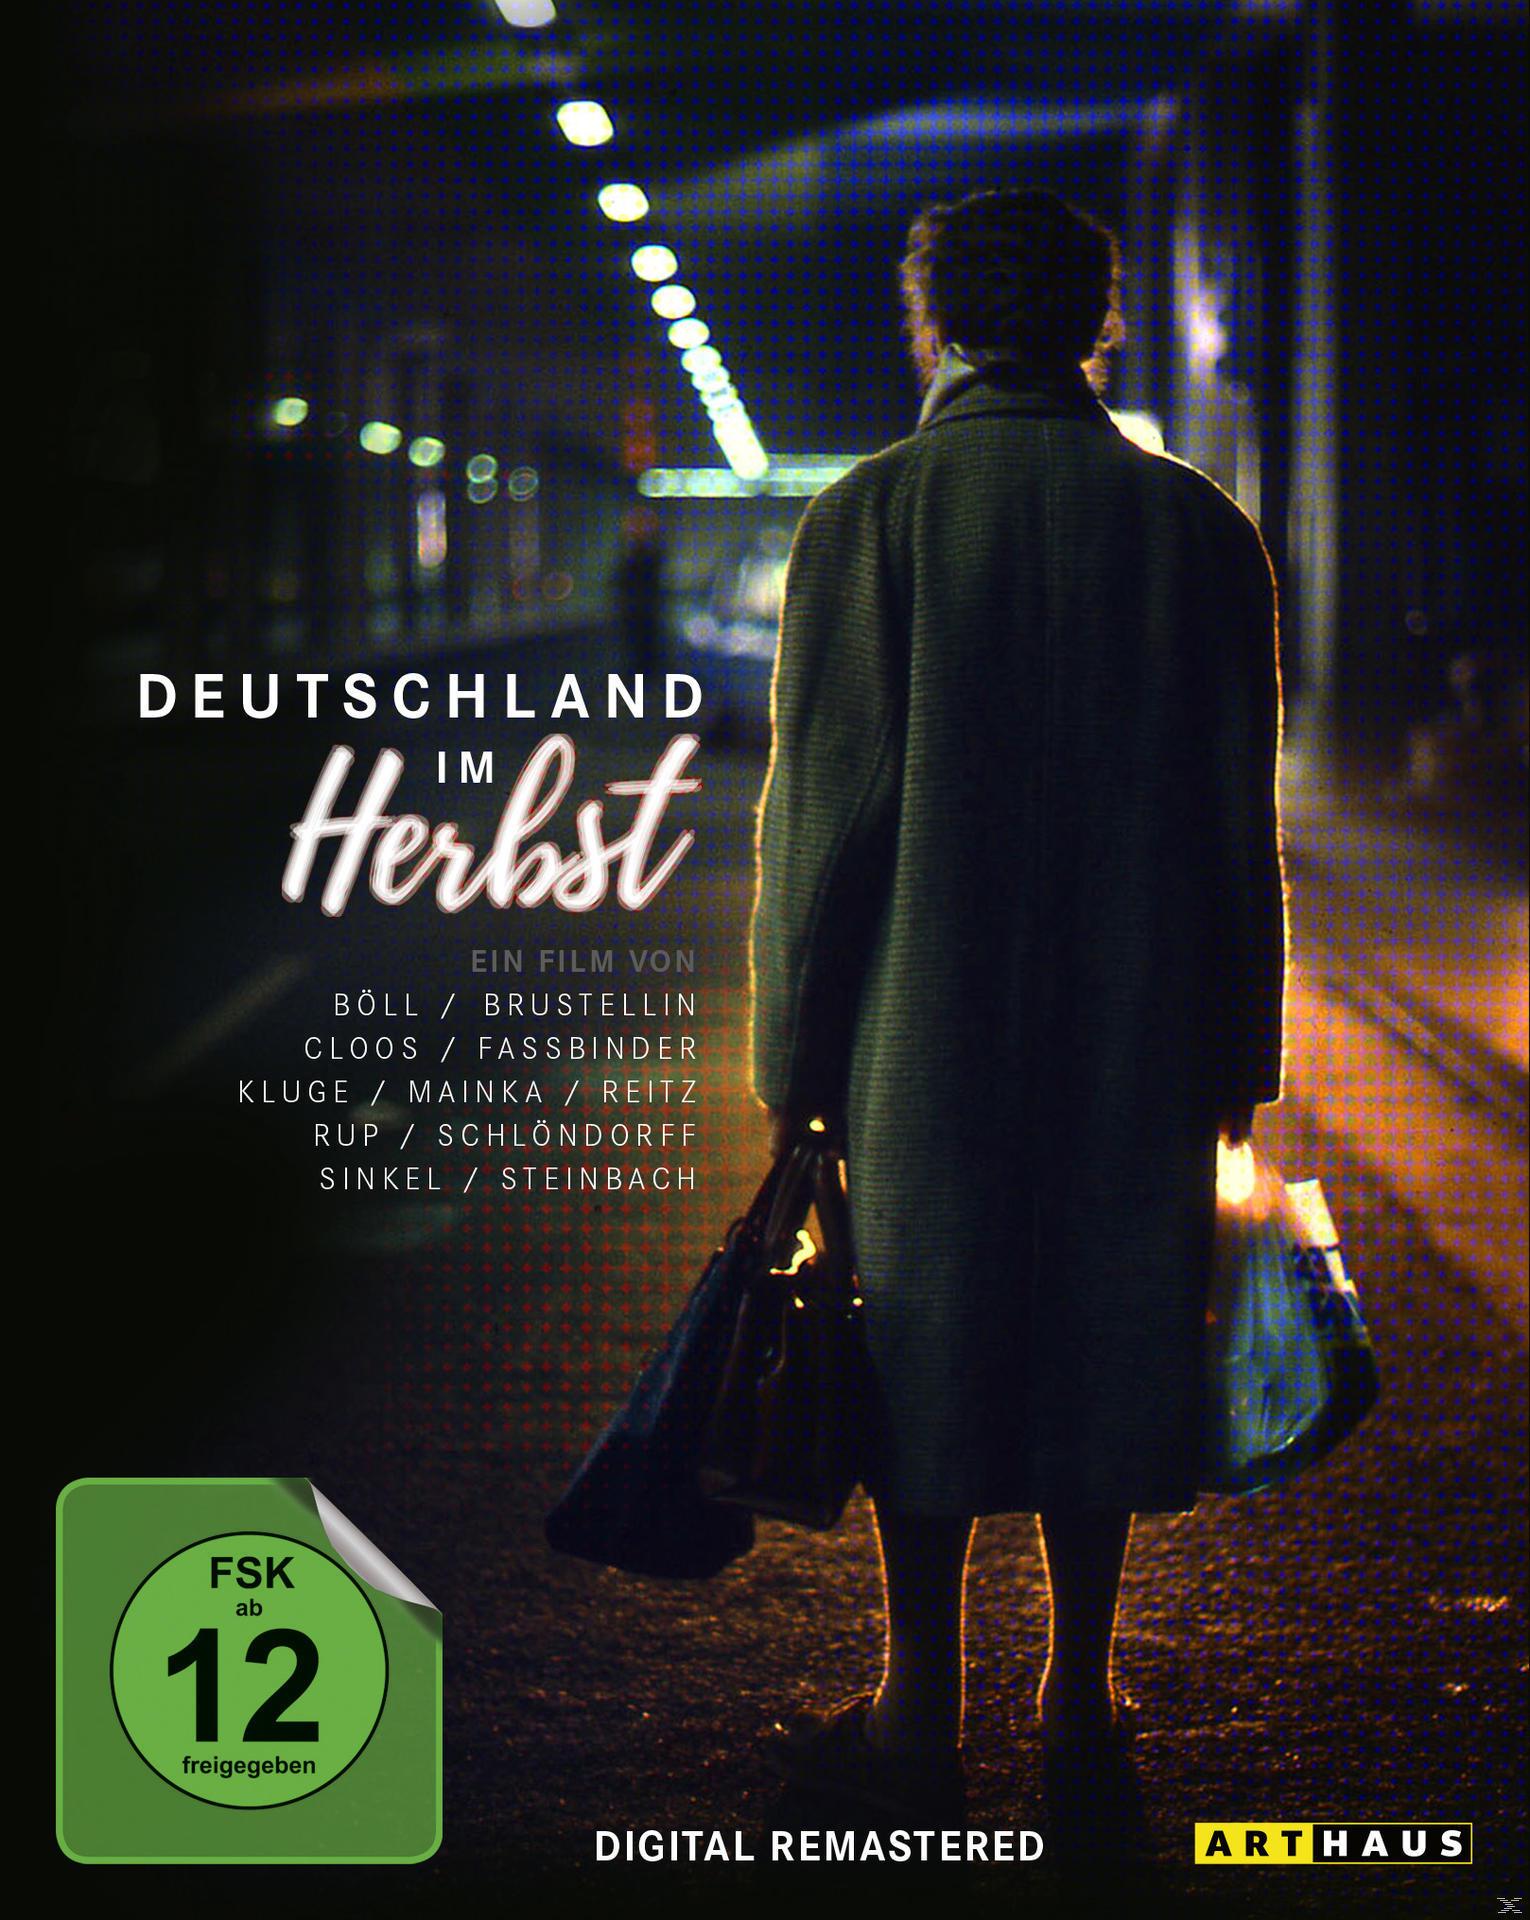 Deutschland Special Herbst im Edition Blu-ray /